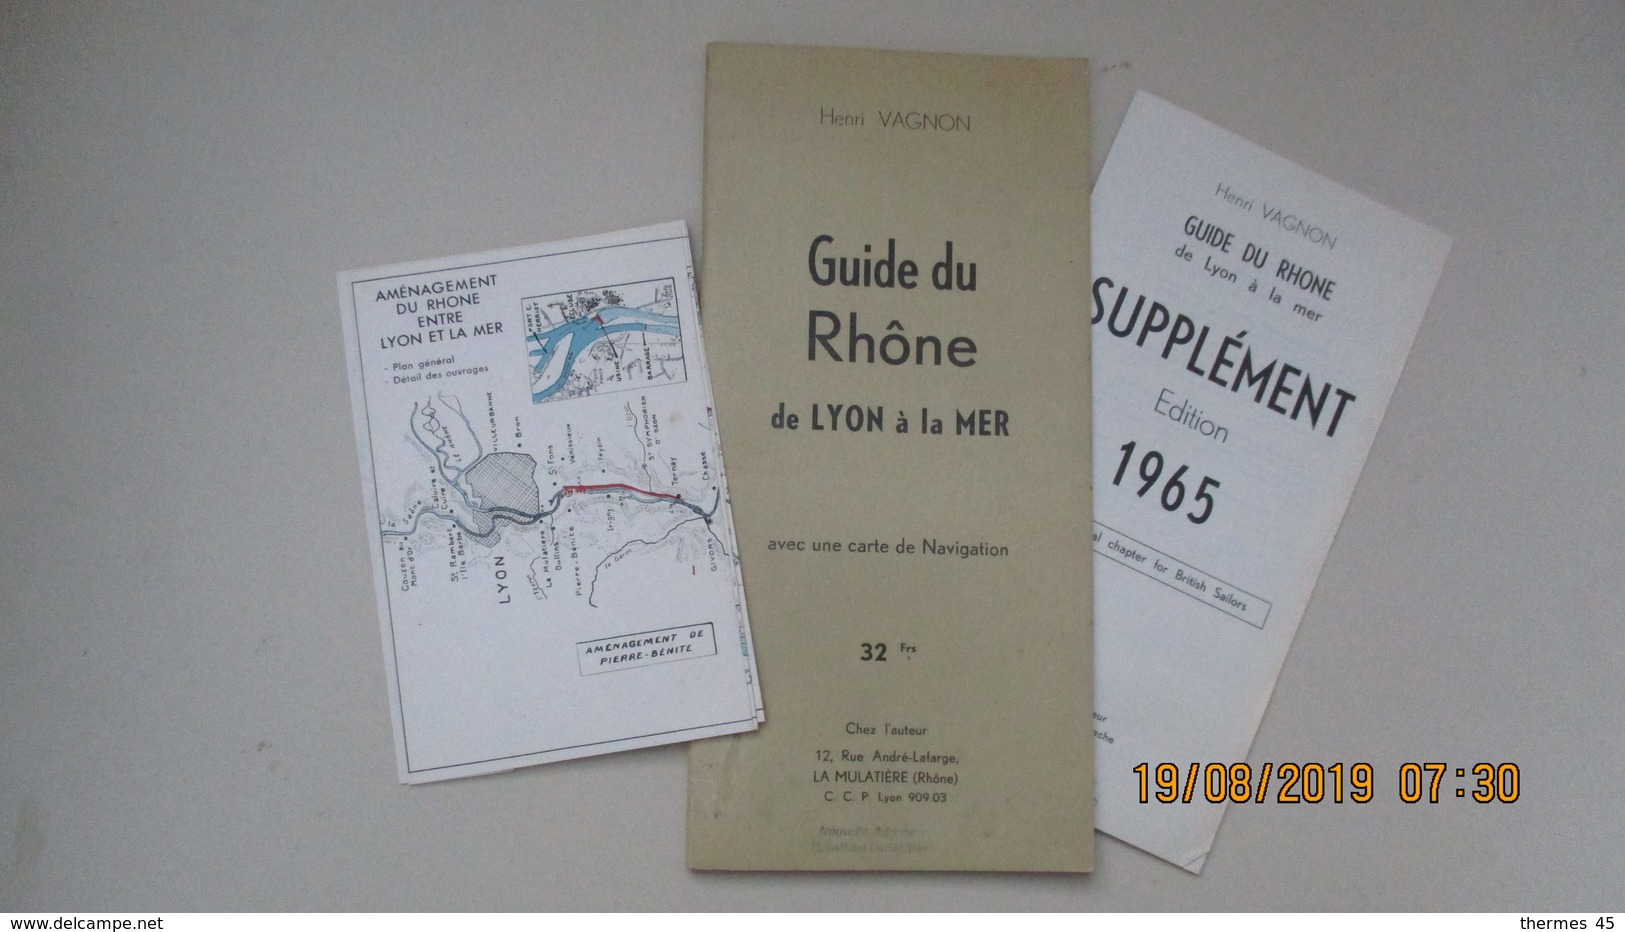 GUIDE DU RHÔNE De LYON à La MER / HENRI VAGNON / 1964 - Cartes Marines